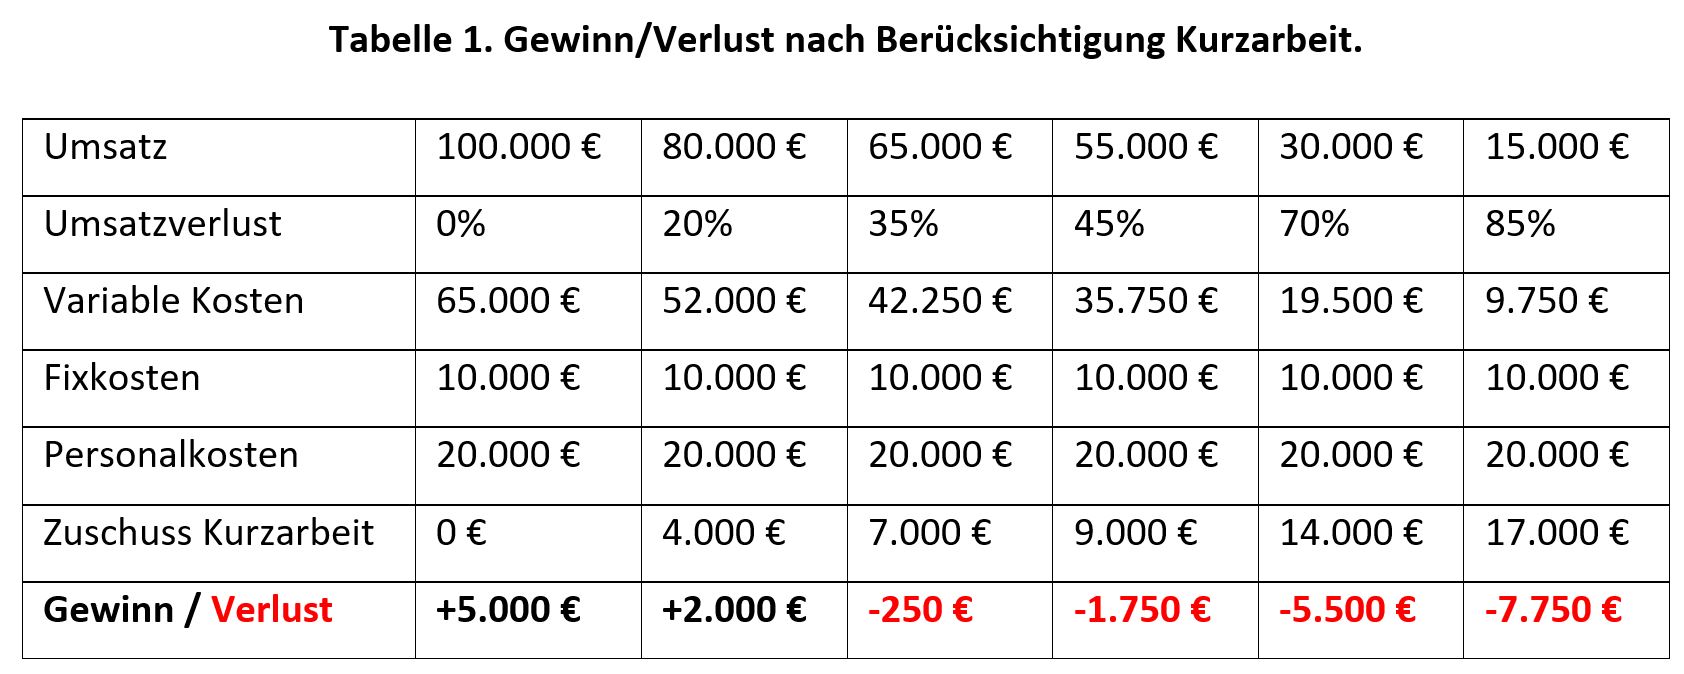 Tabelle 1. Gewinn/Verlust nach Berücksichtigung Kurzarbeit.